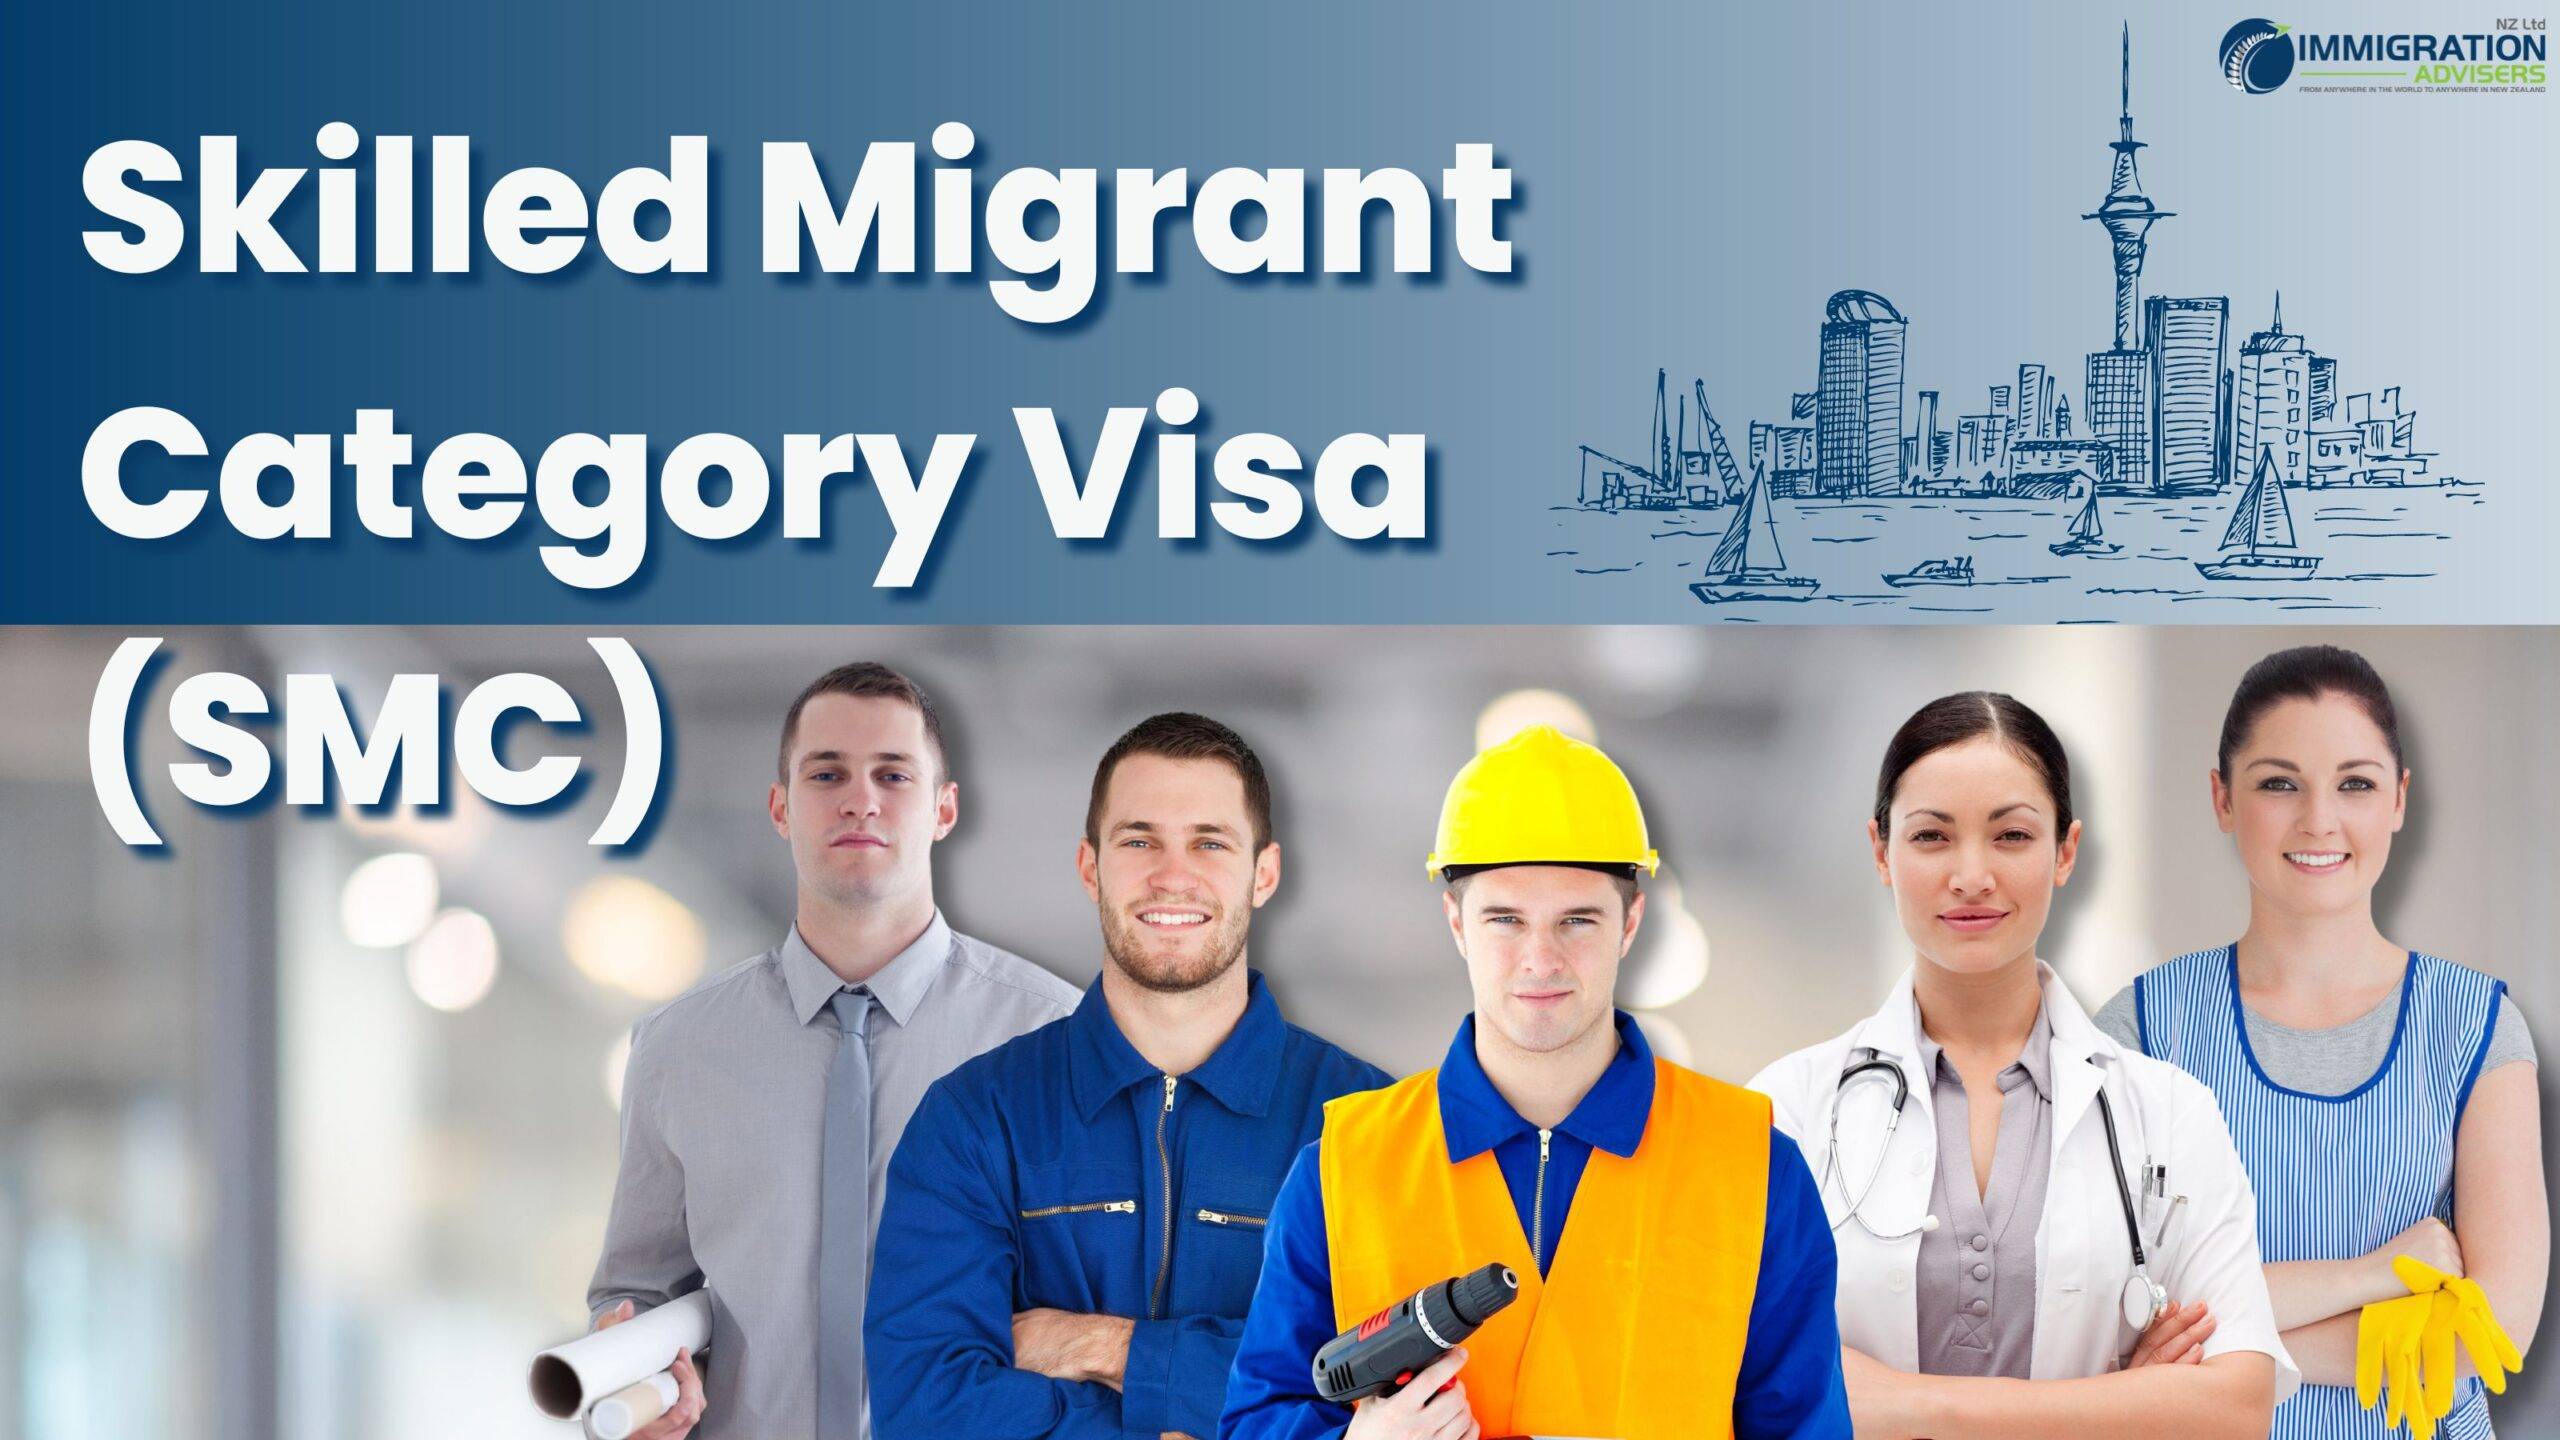 Skilled Migrant Category Visa (SMC)